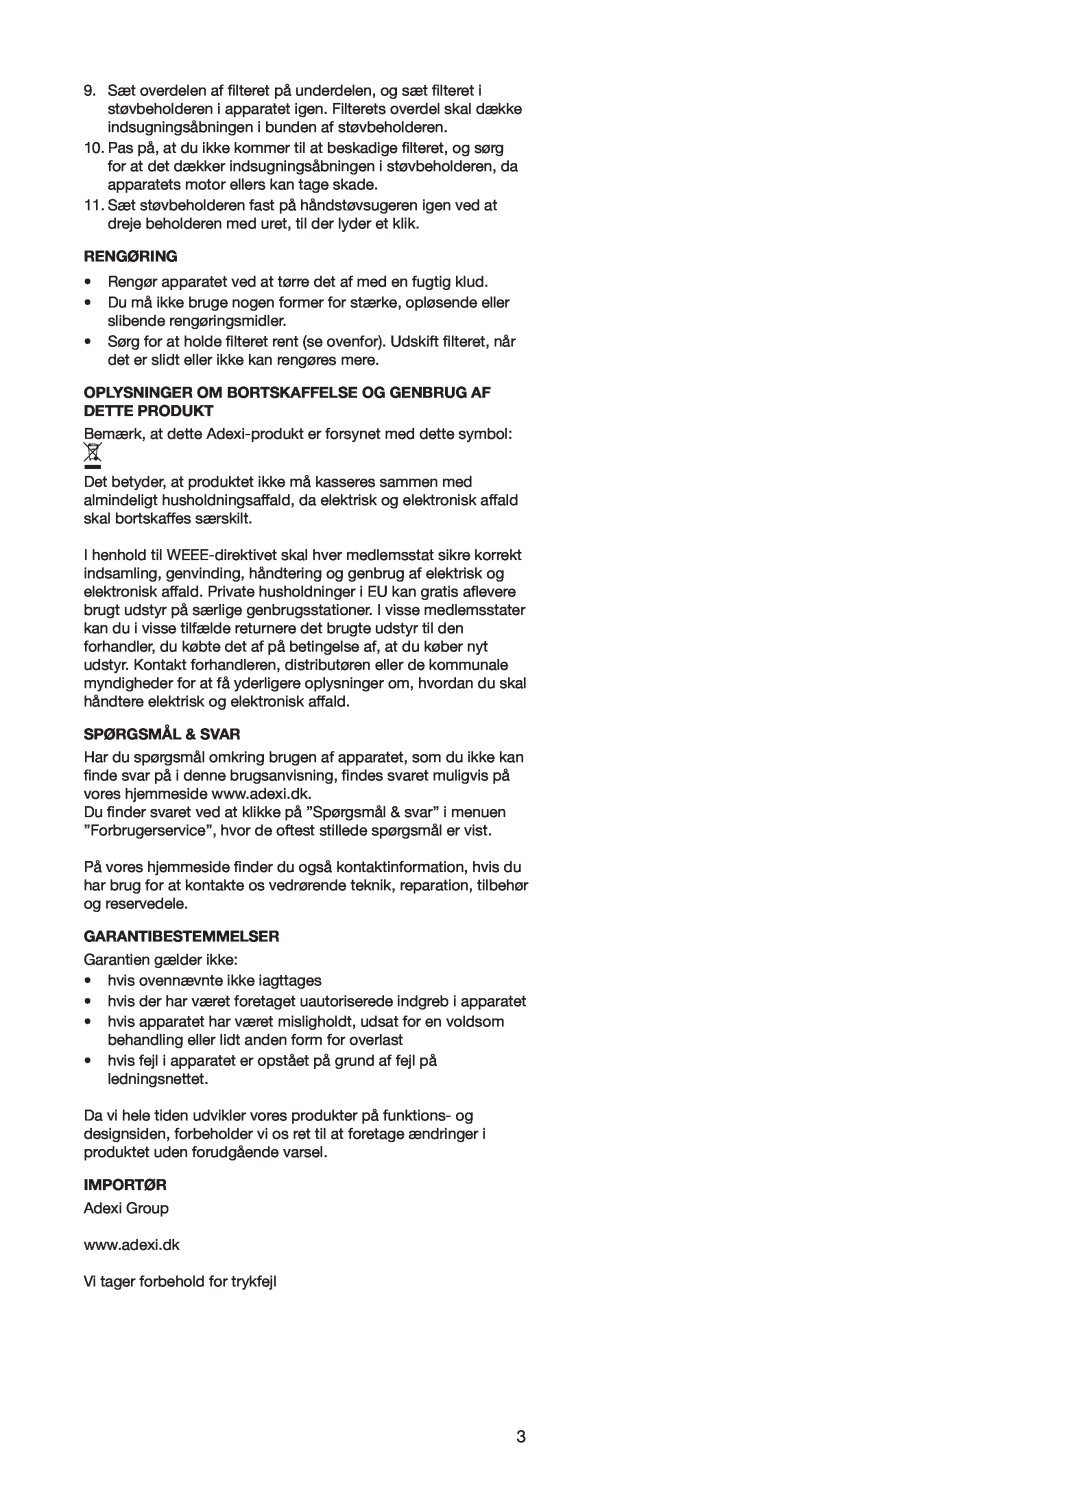 Melissa 240-112/113 manual Rengøring, Spørgsmål & Svar, Garantibestemmelser, Importør 